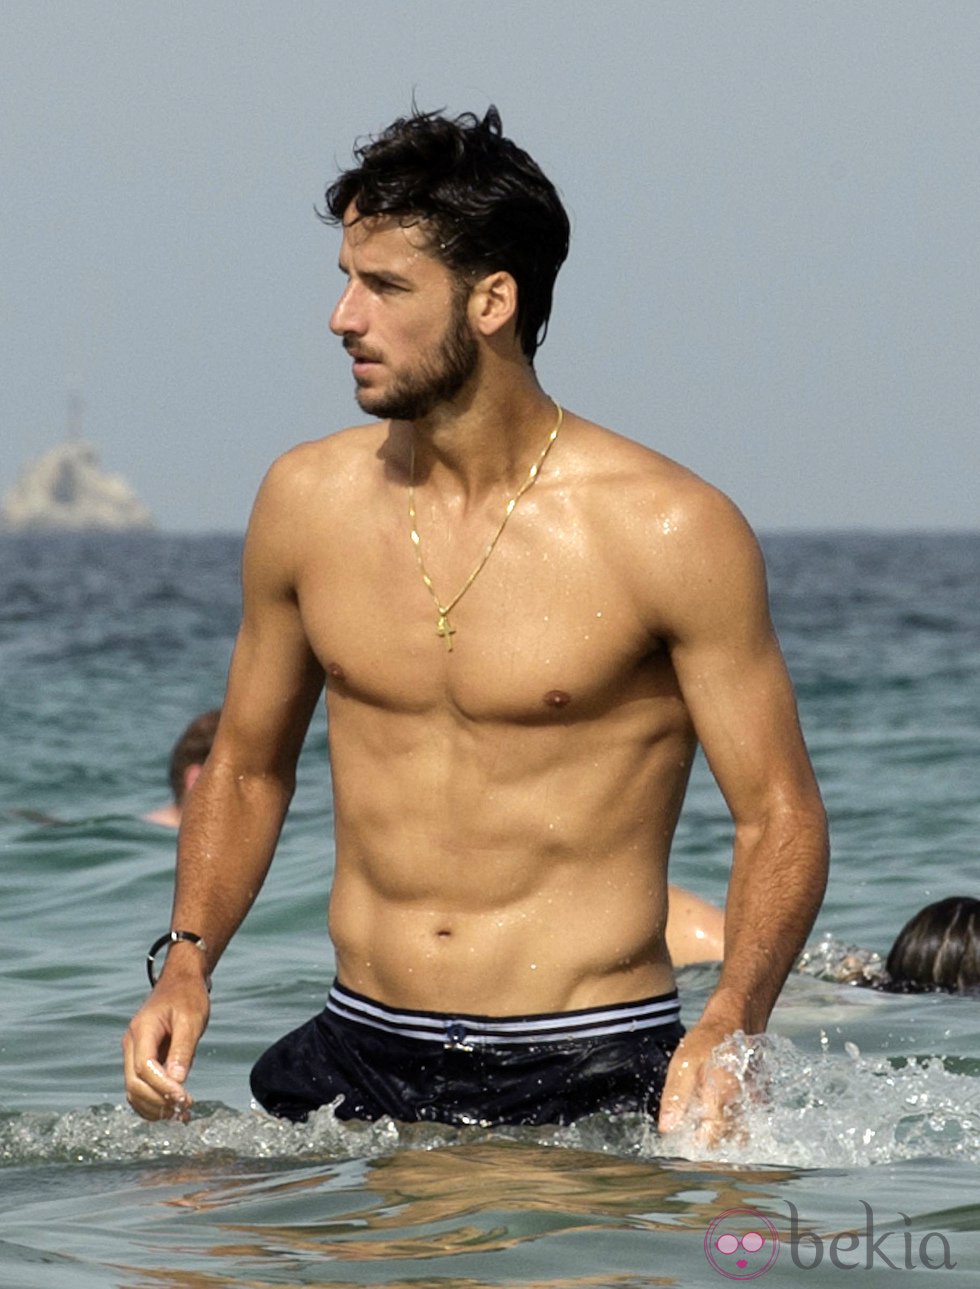 Feliciano Lopez Sighting In Ibiza - June 29, 2012